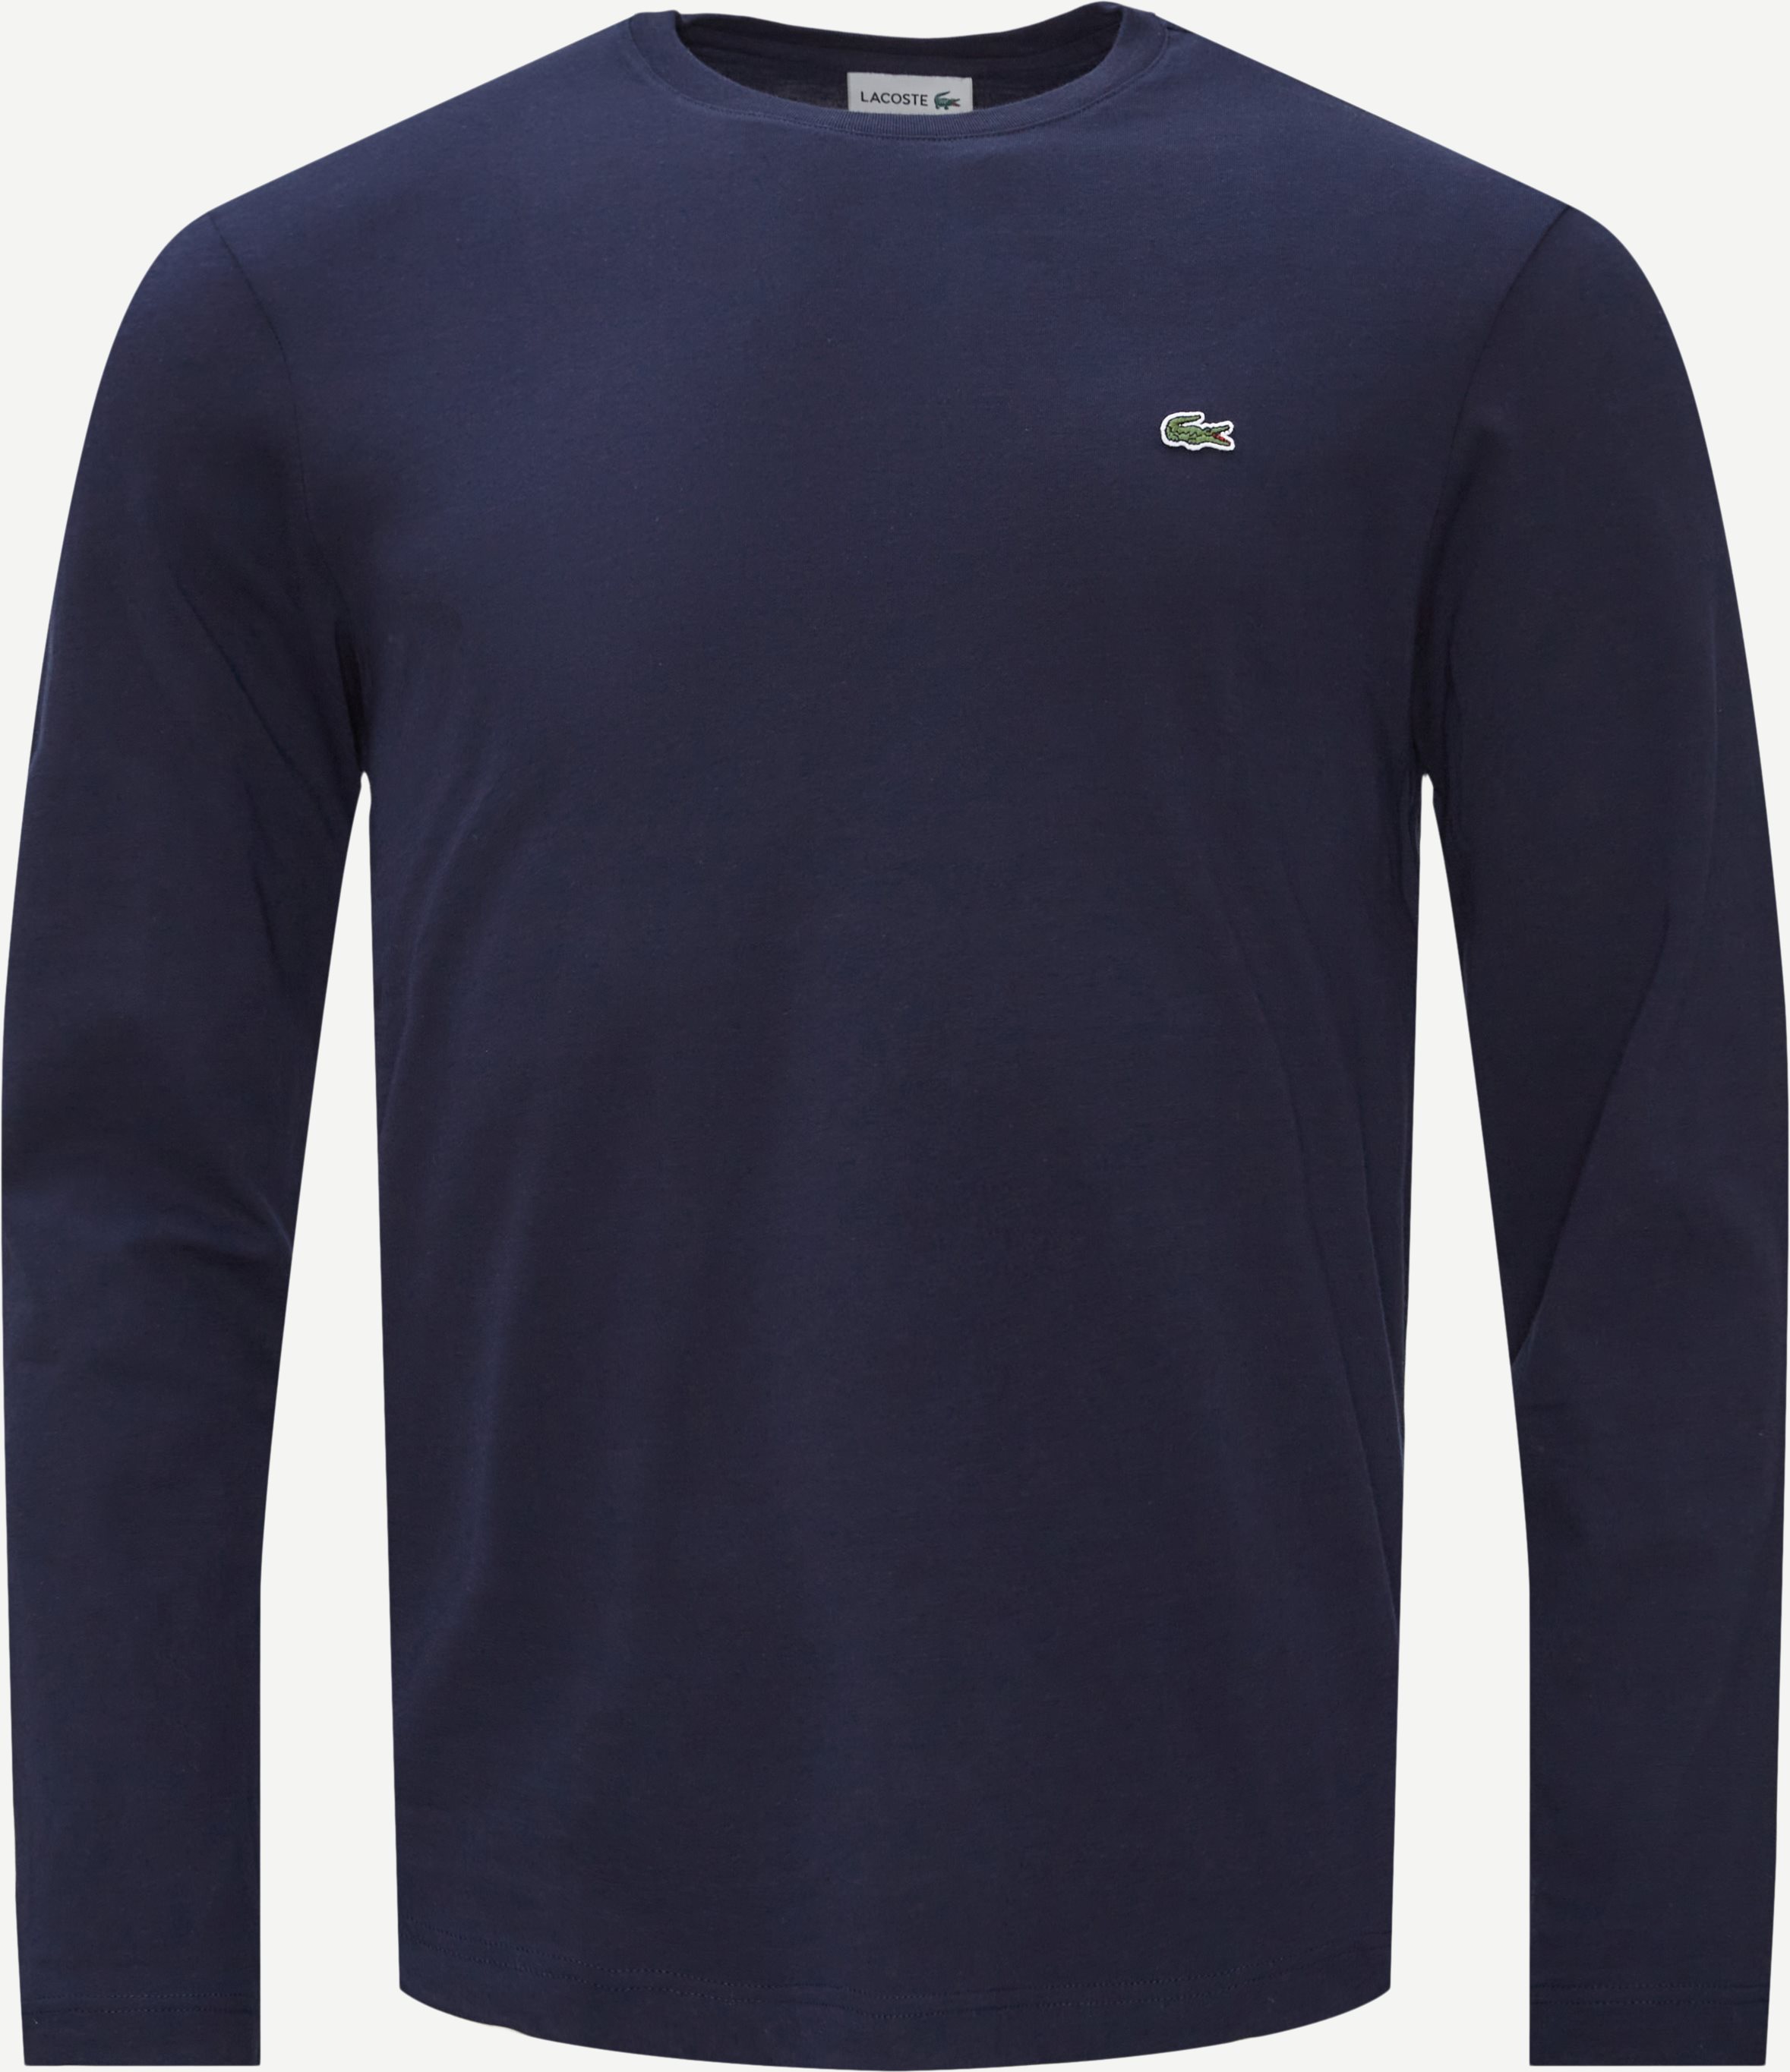 Rundhalsausschnitt mit langen Ärmeln - T-Shirts - Regular fit - Blau